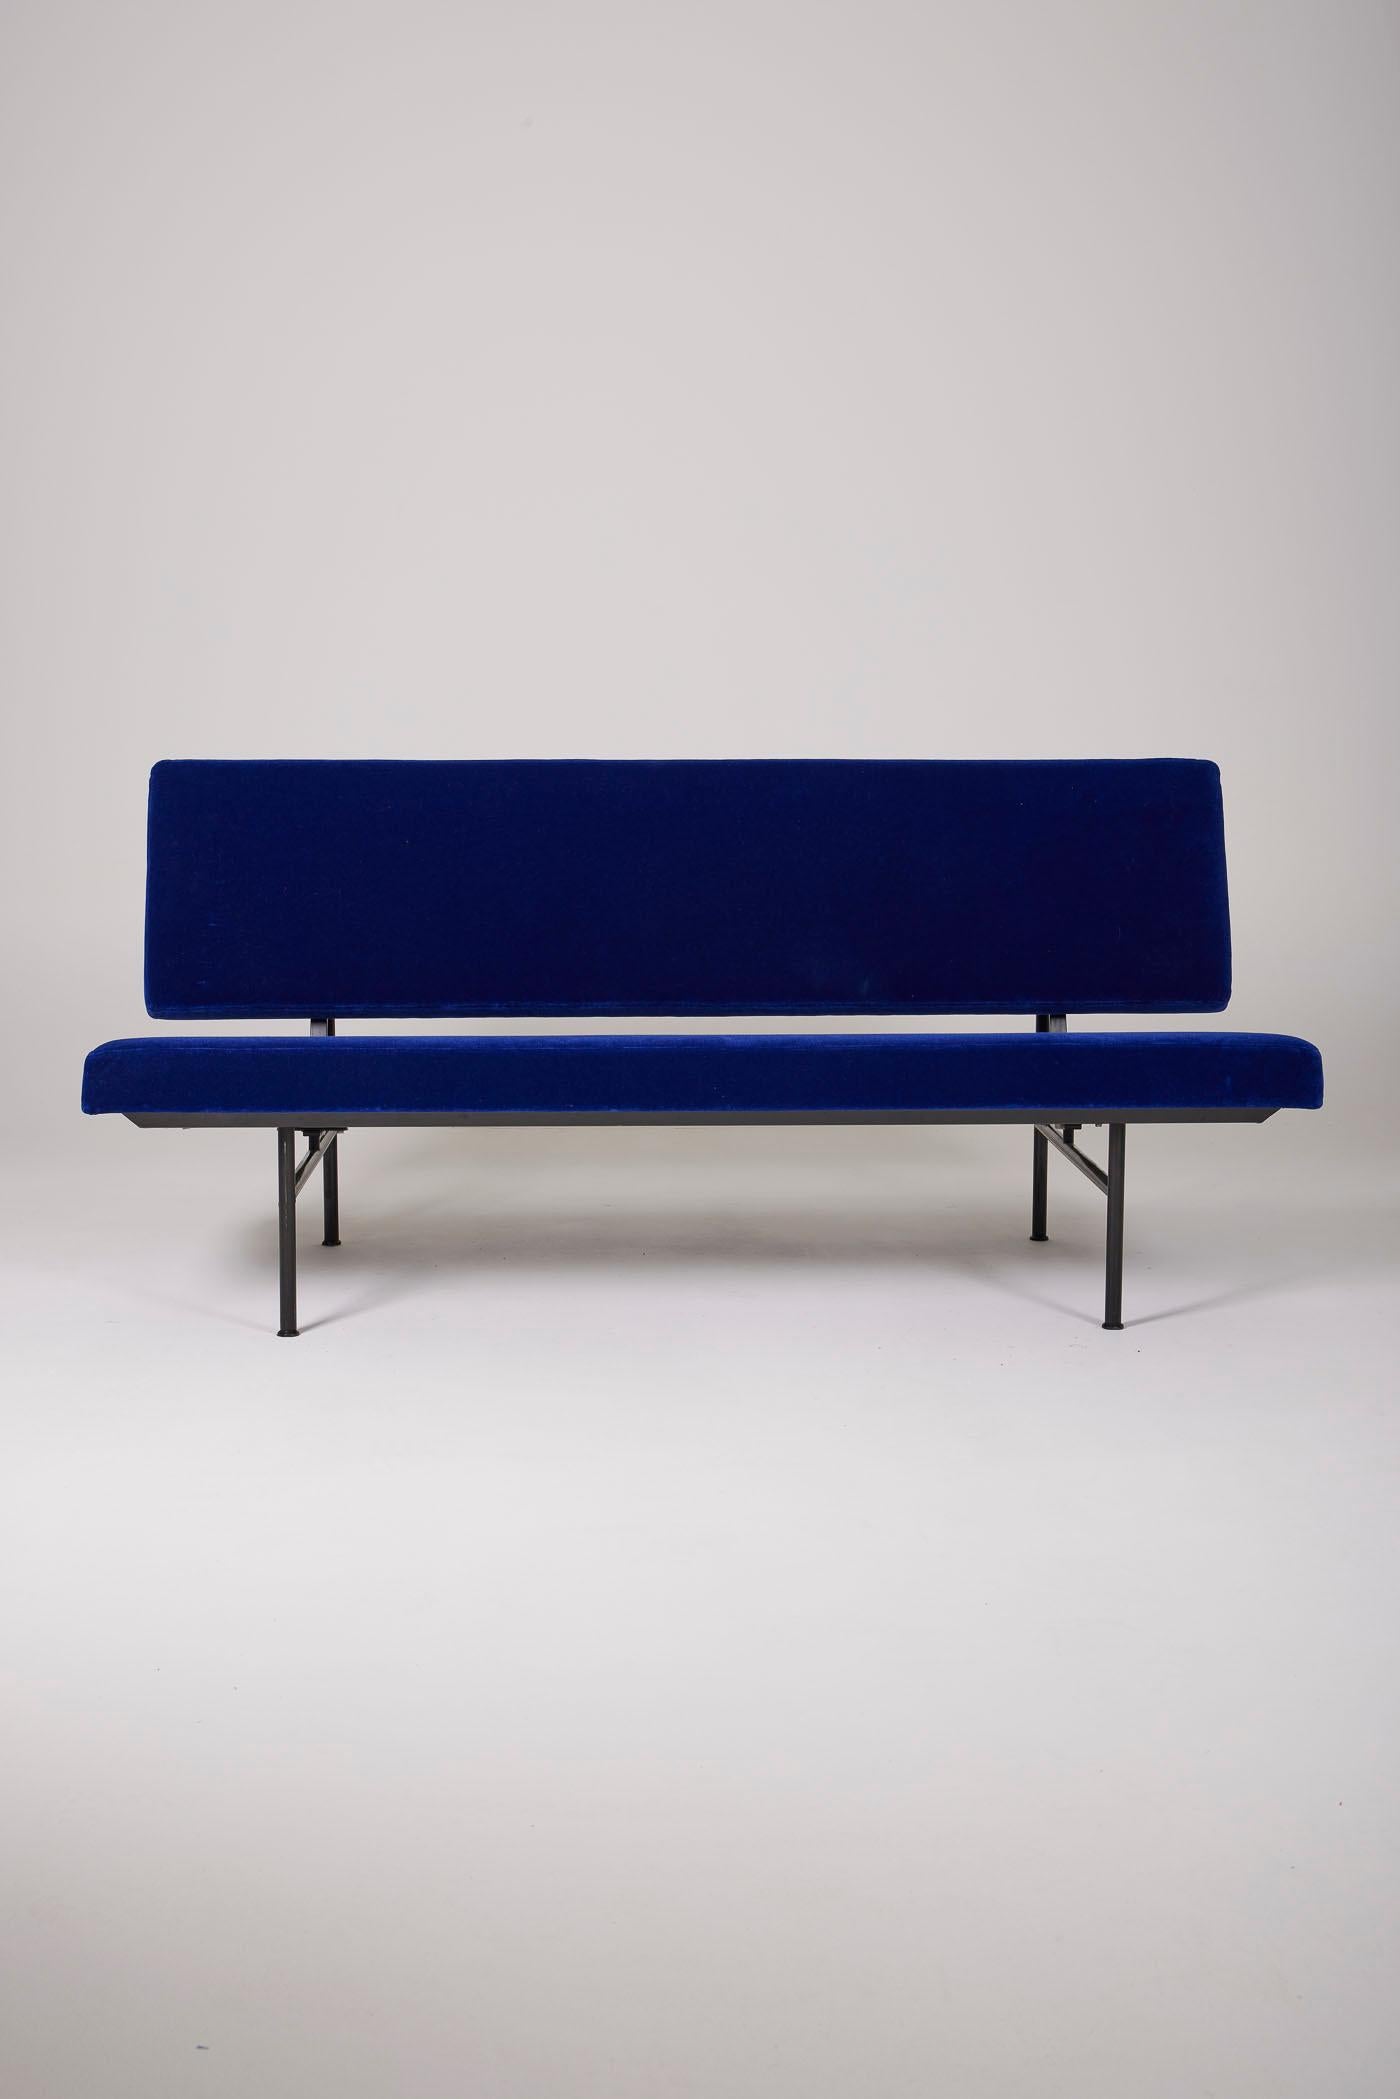 Canapé 2 places du designer André Robert Cordemeyer pour Gispen, des années 1960. Le cadre est en métal laqué noir. Le dossier et l'assise ont été retapissés en velours bleu. En parfait état.
DV376